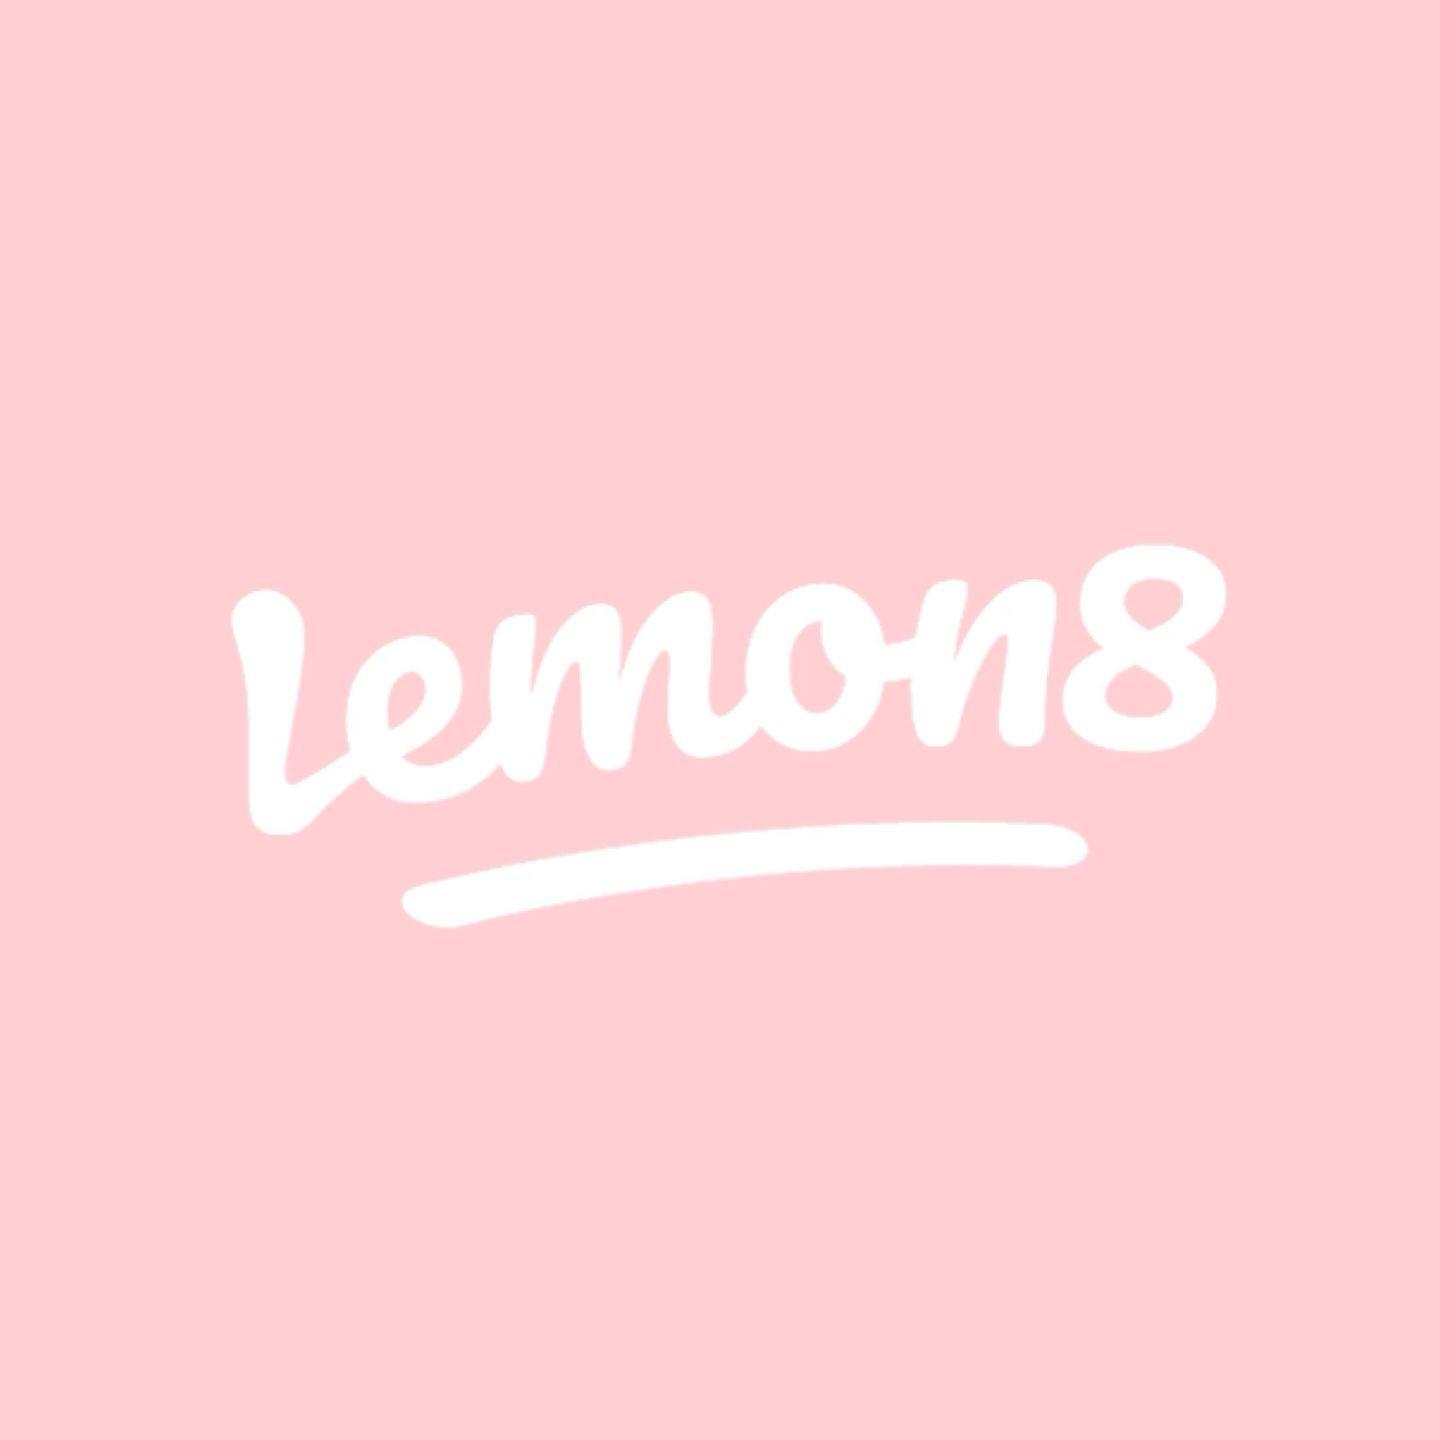 peach_lemon88's images